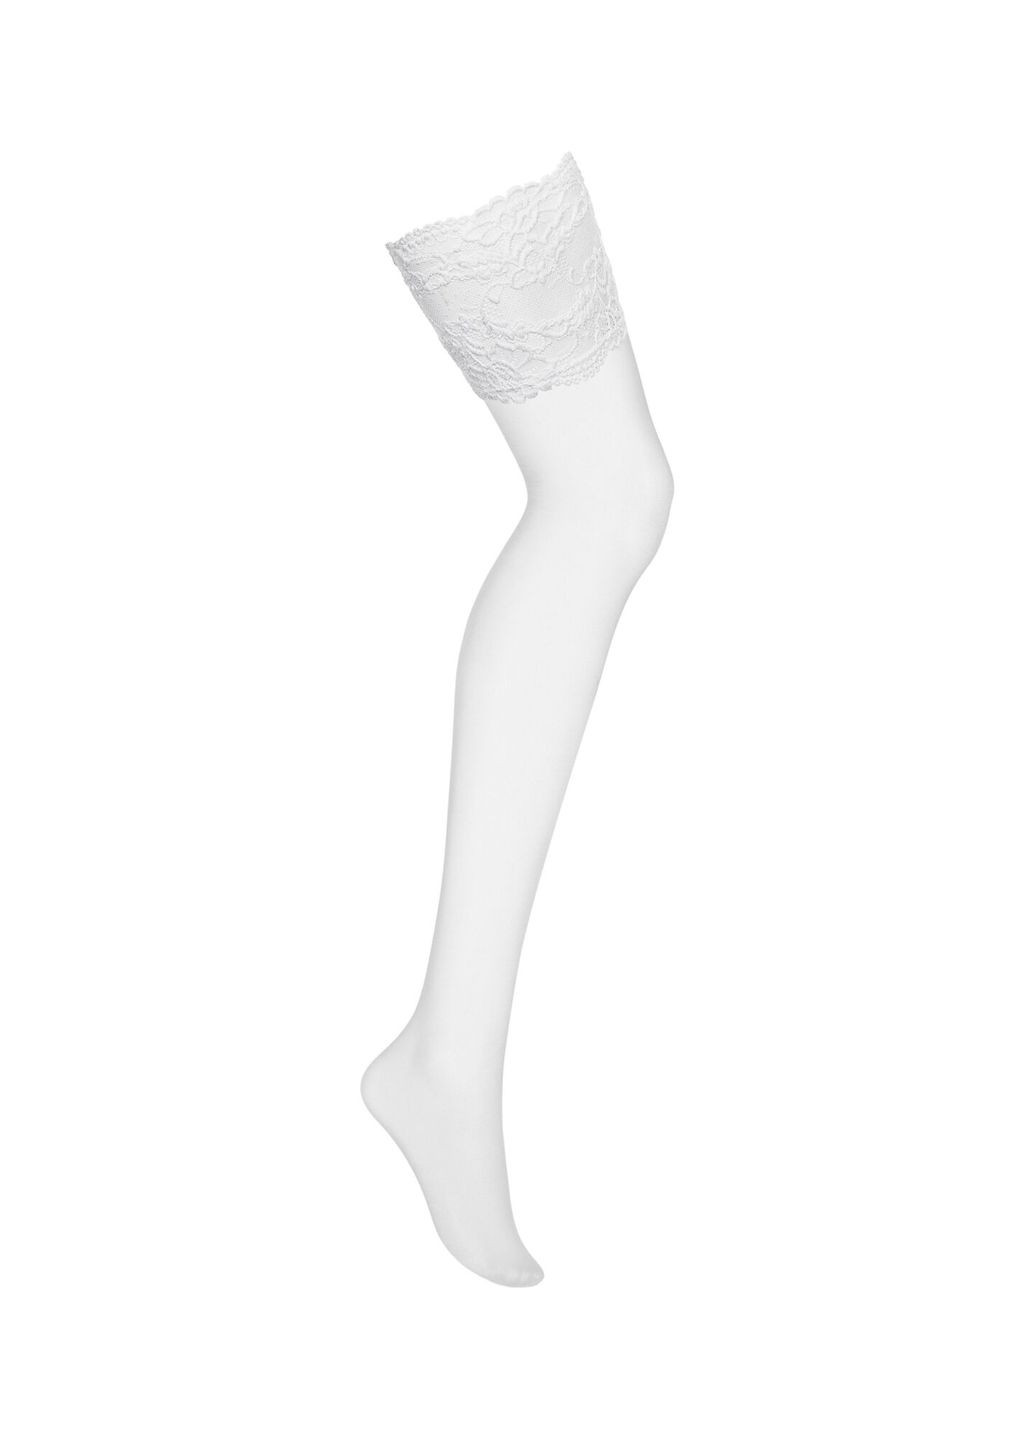 Чулки под пояс с широким кружевом 810-STO-2 stockings белые - CherryLove Obsessive белый